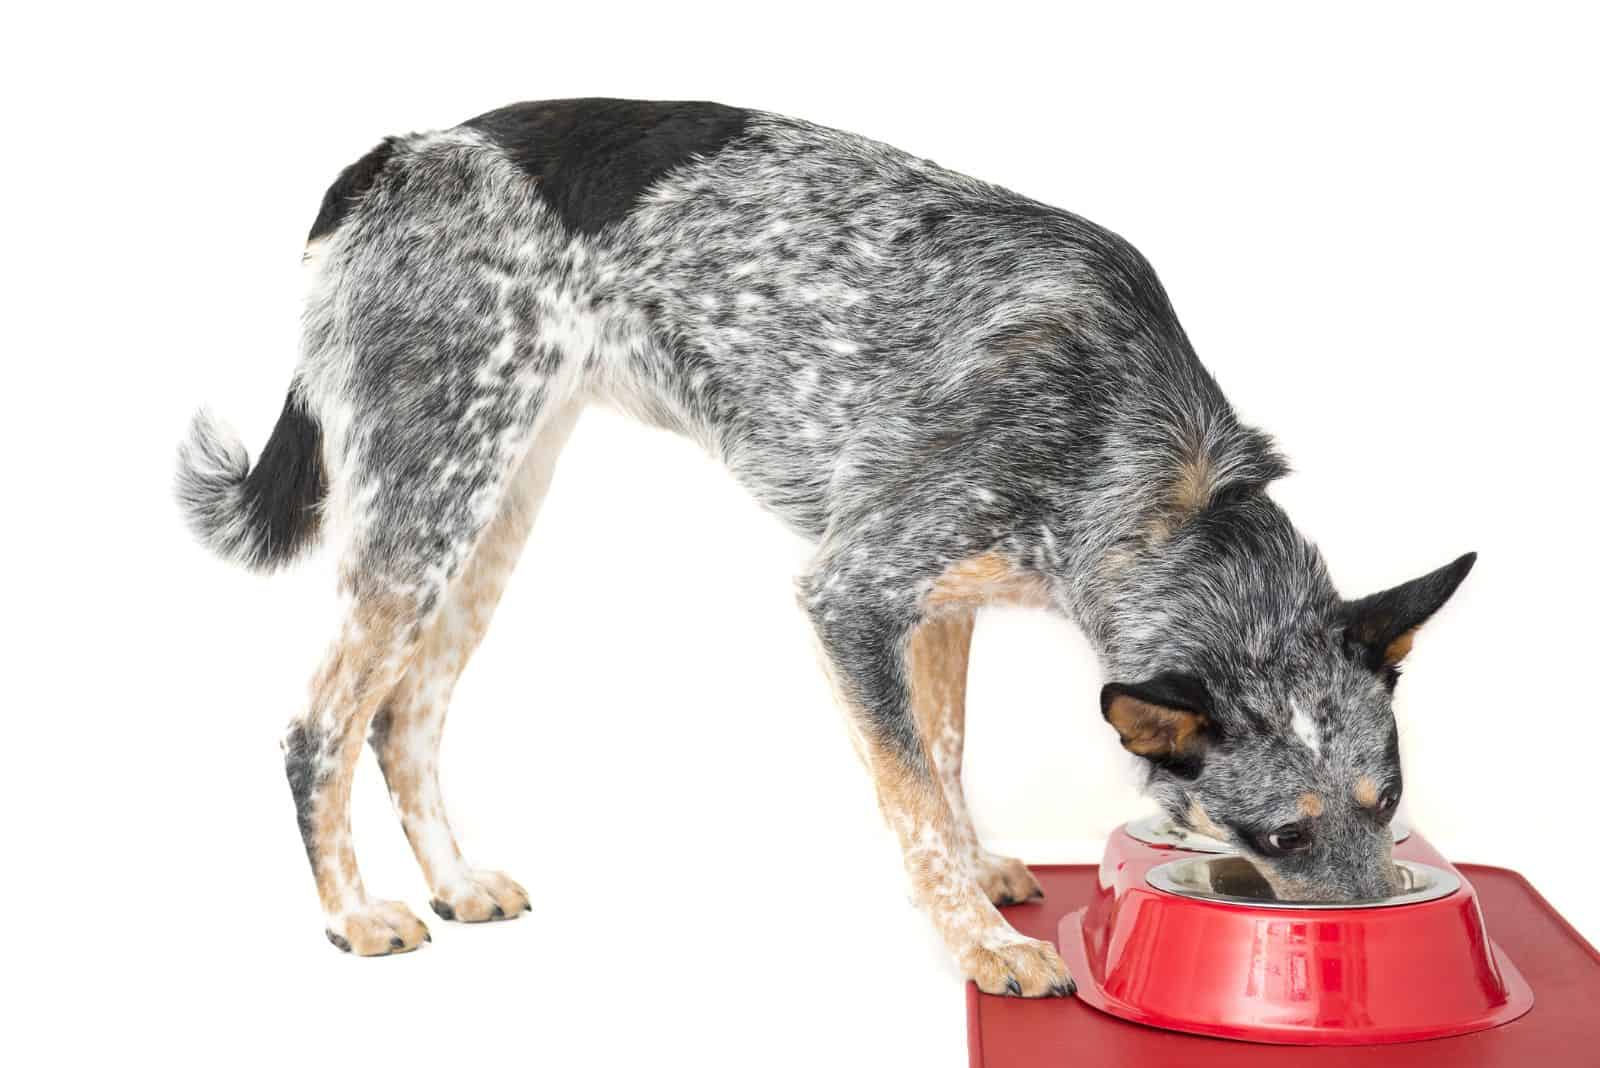 Blue Heeler eats from a bowl